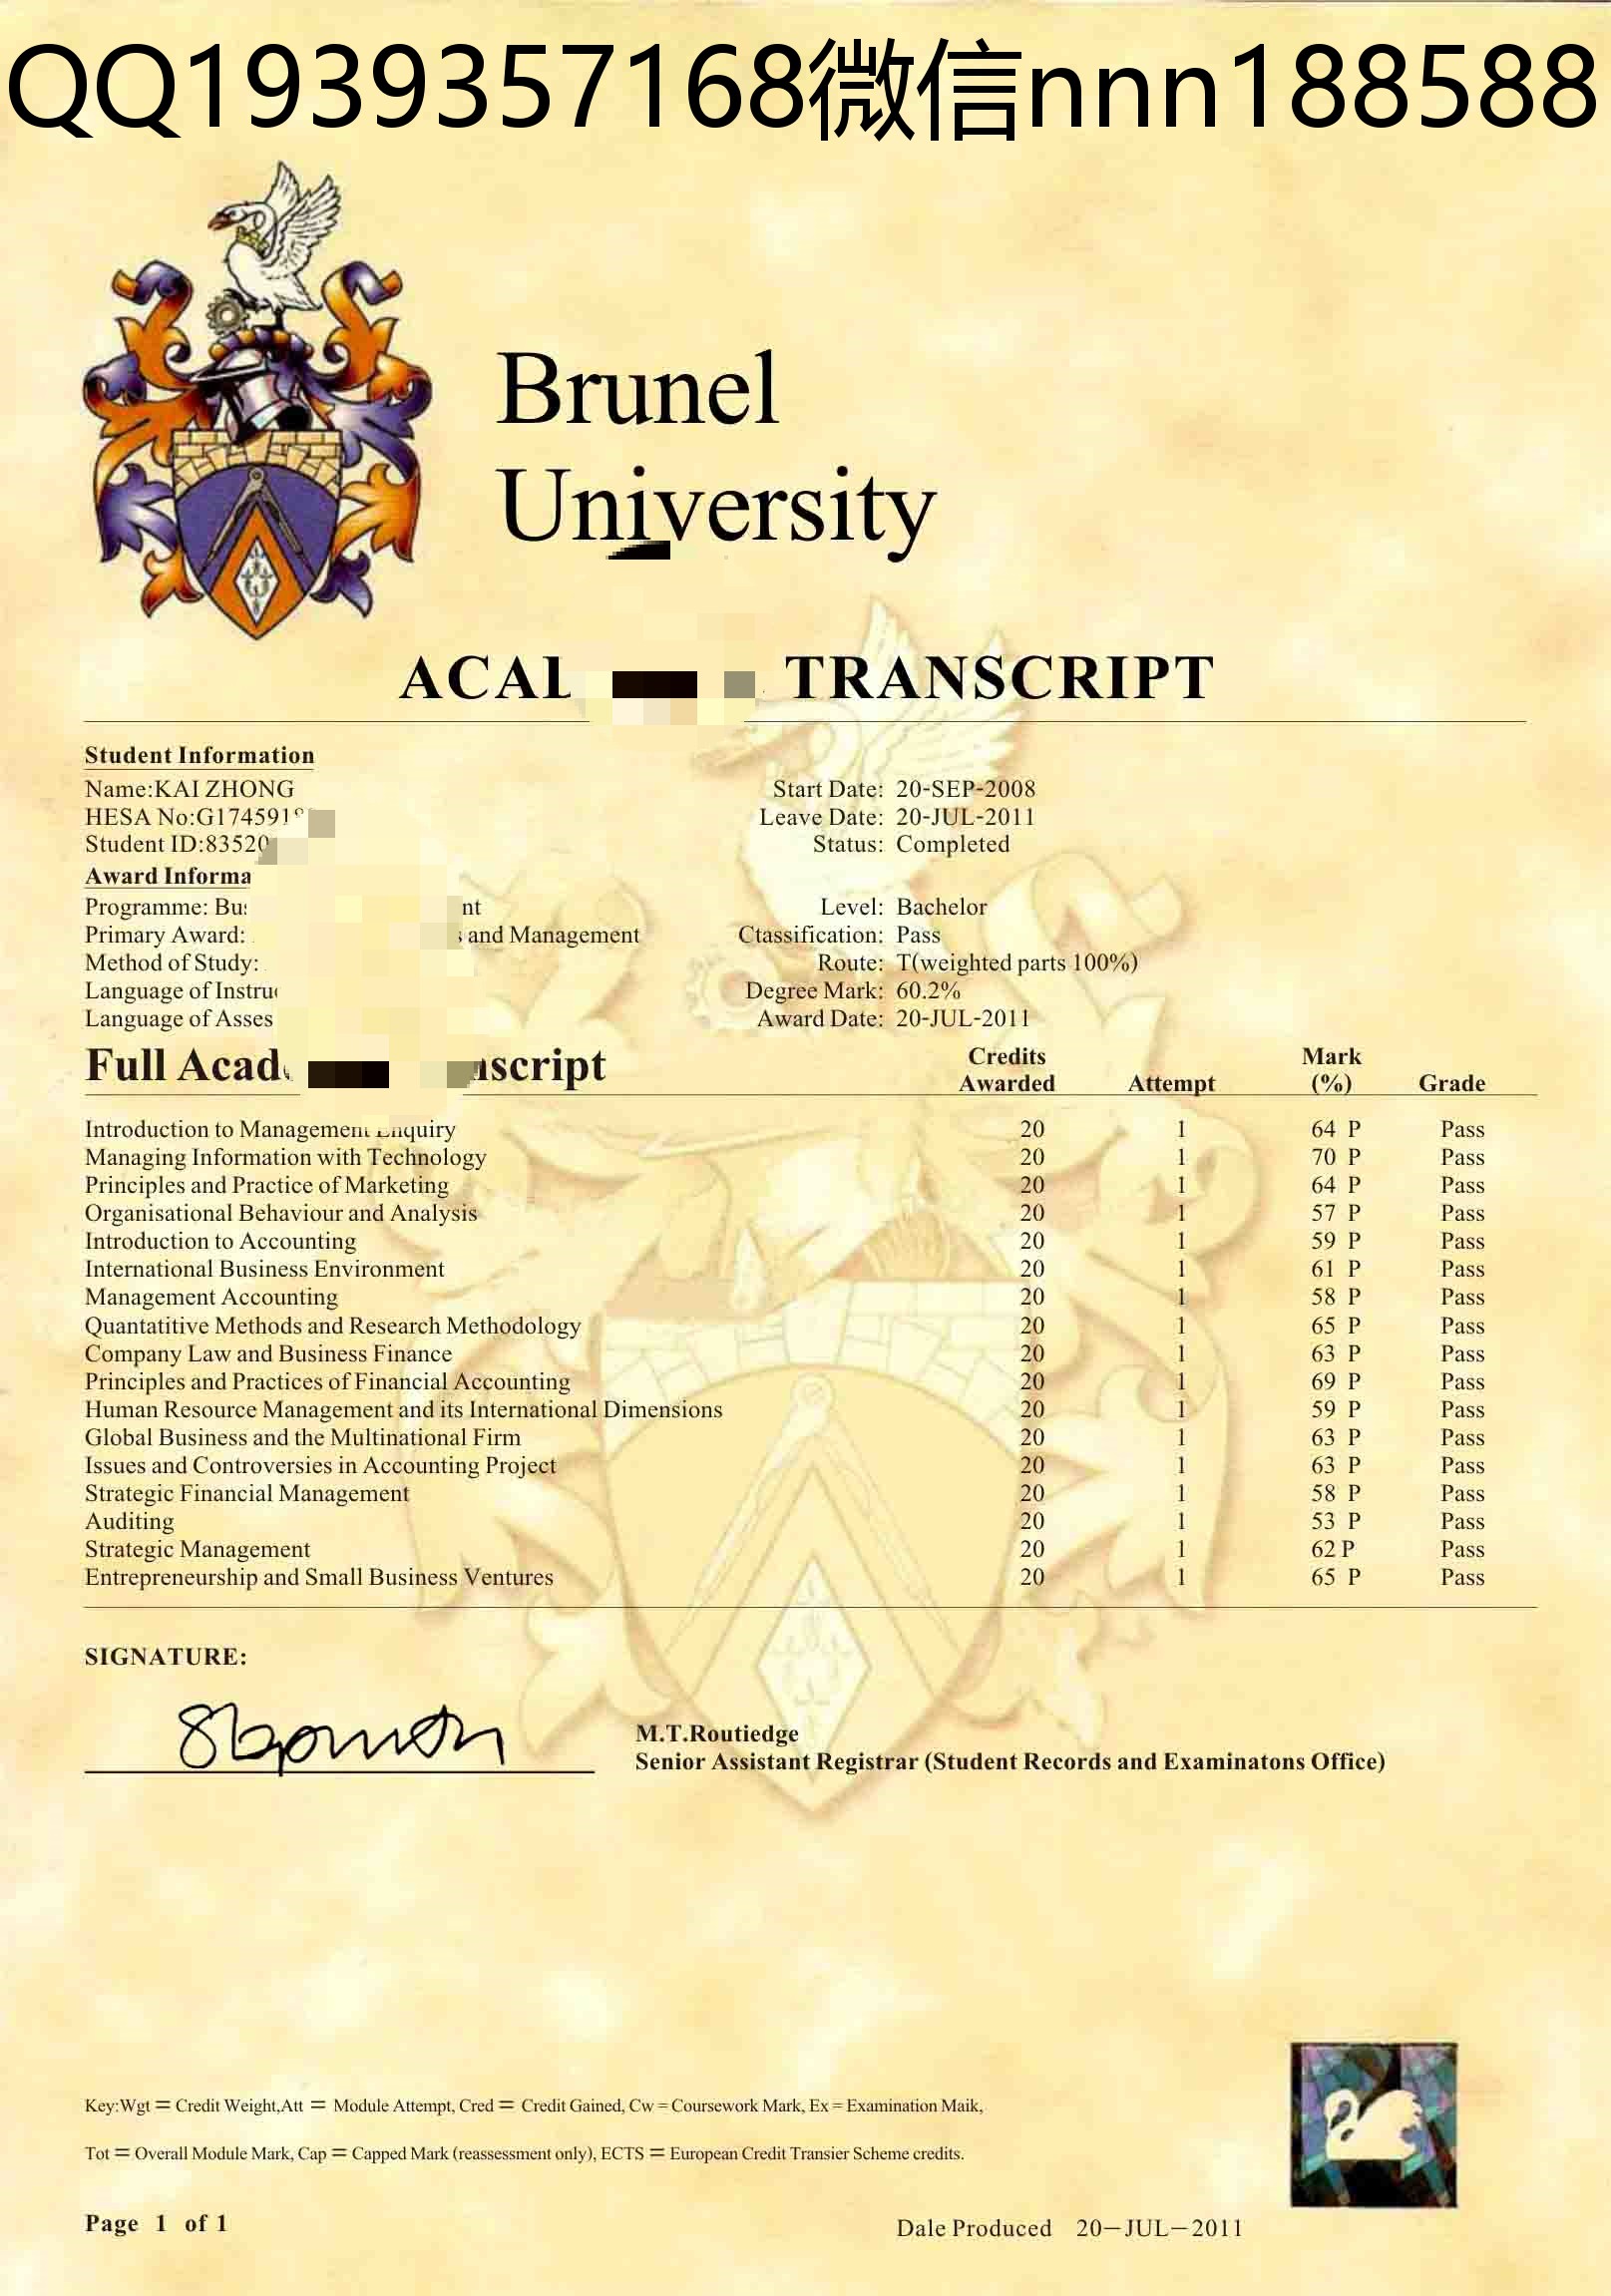 布鲁内尔大学brunel university成绩单_WPS图片.jpg